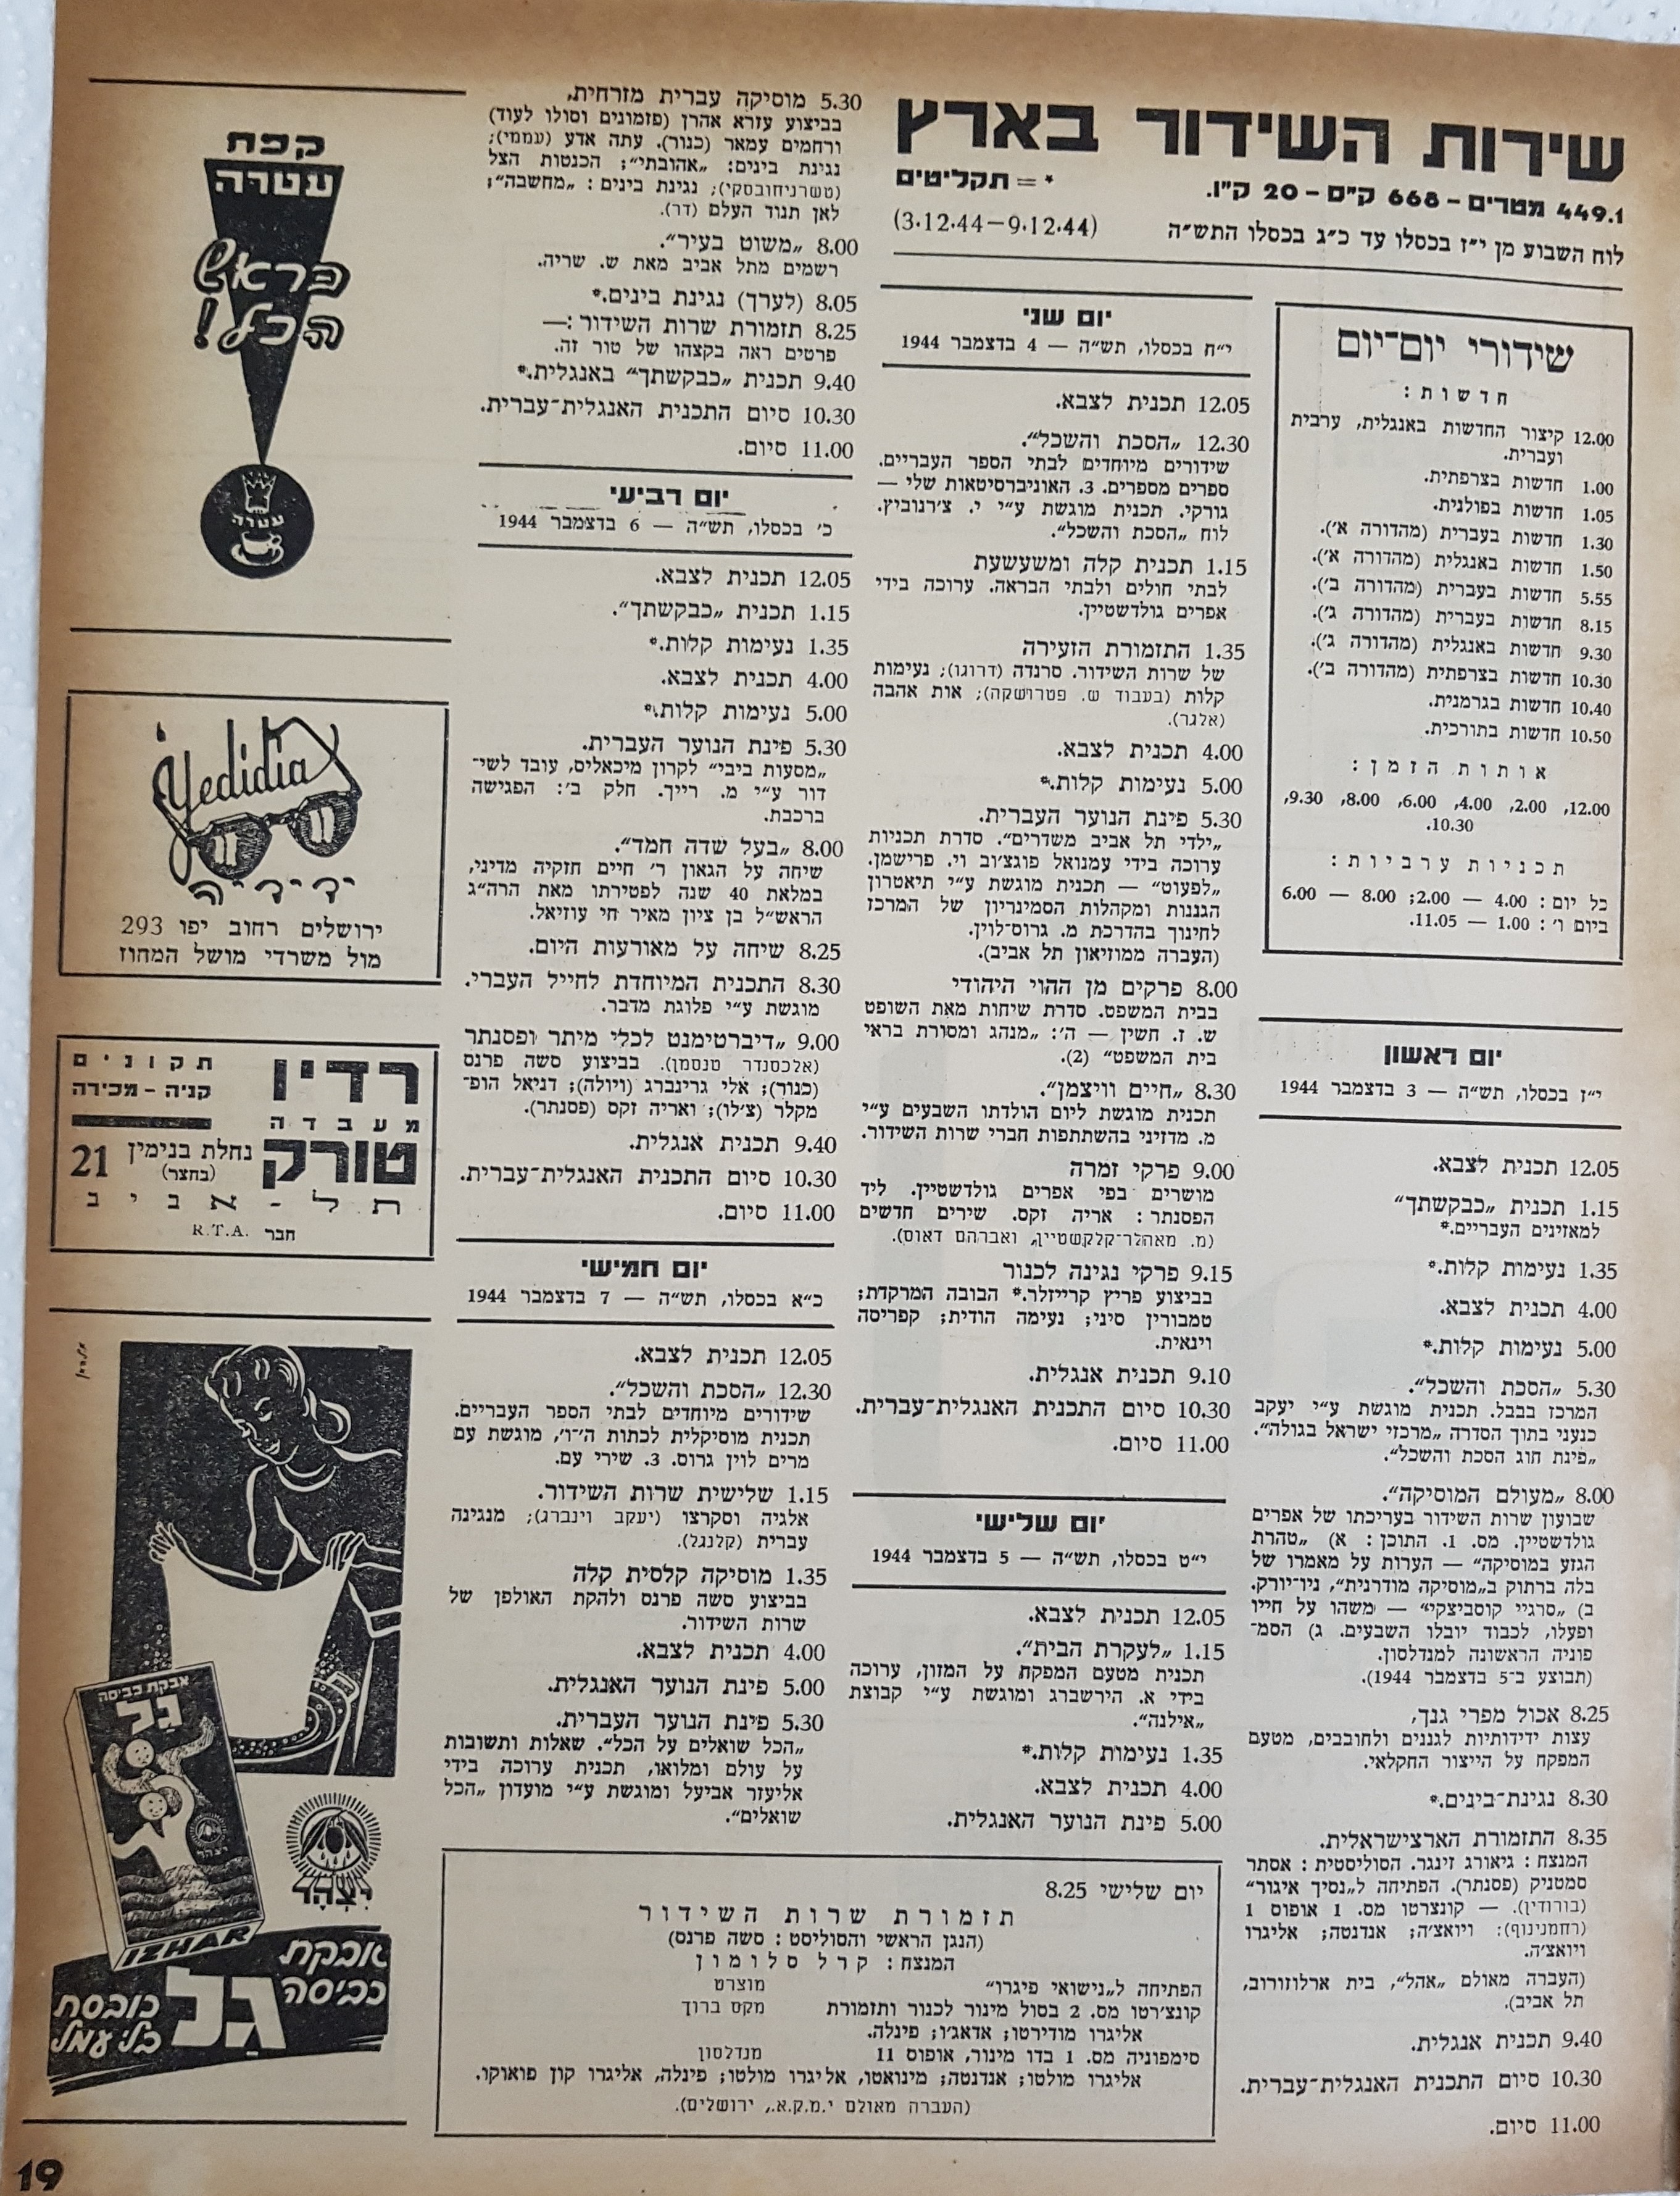 Radio Schedule: December 3 - December 7, 1944